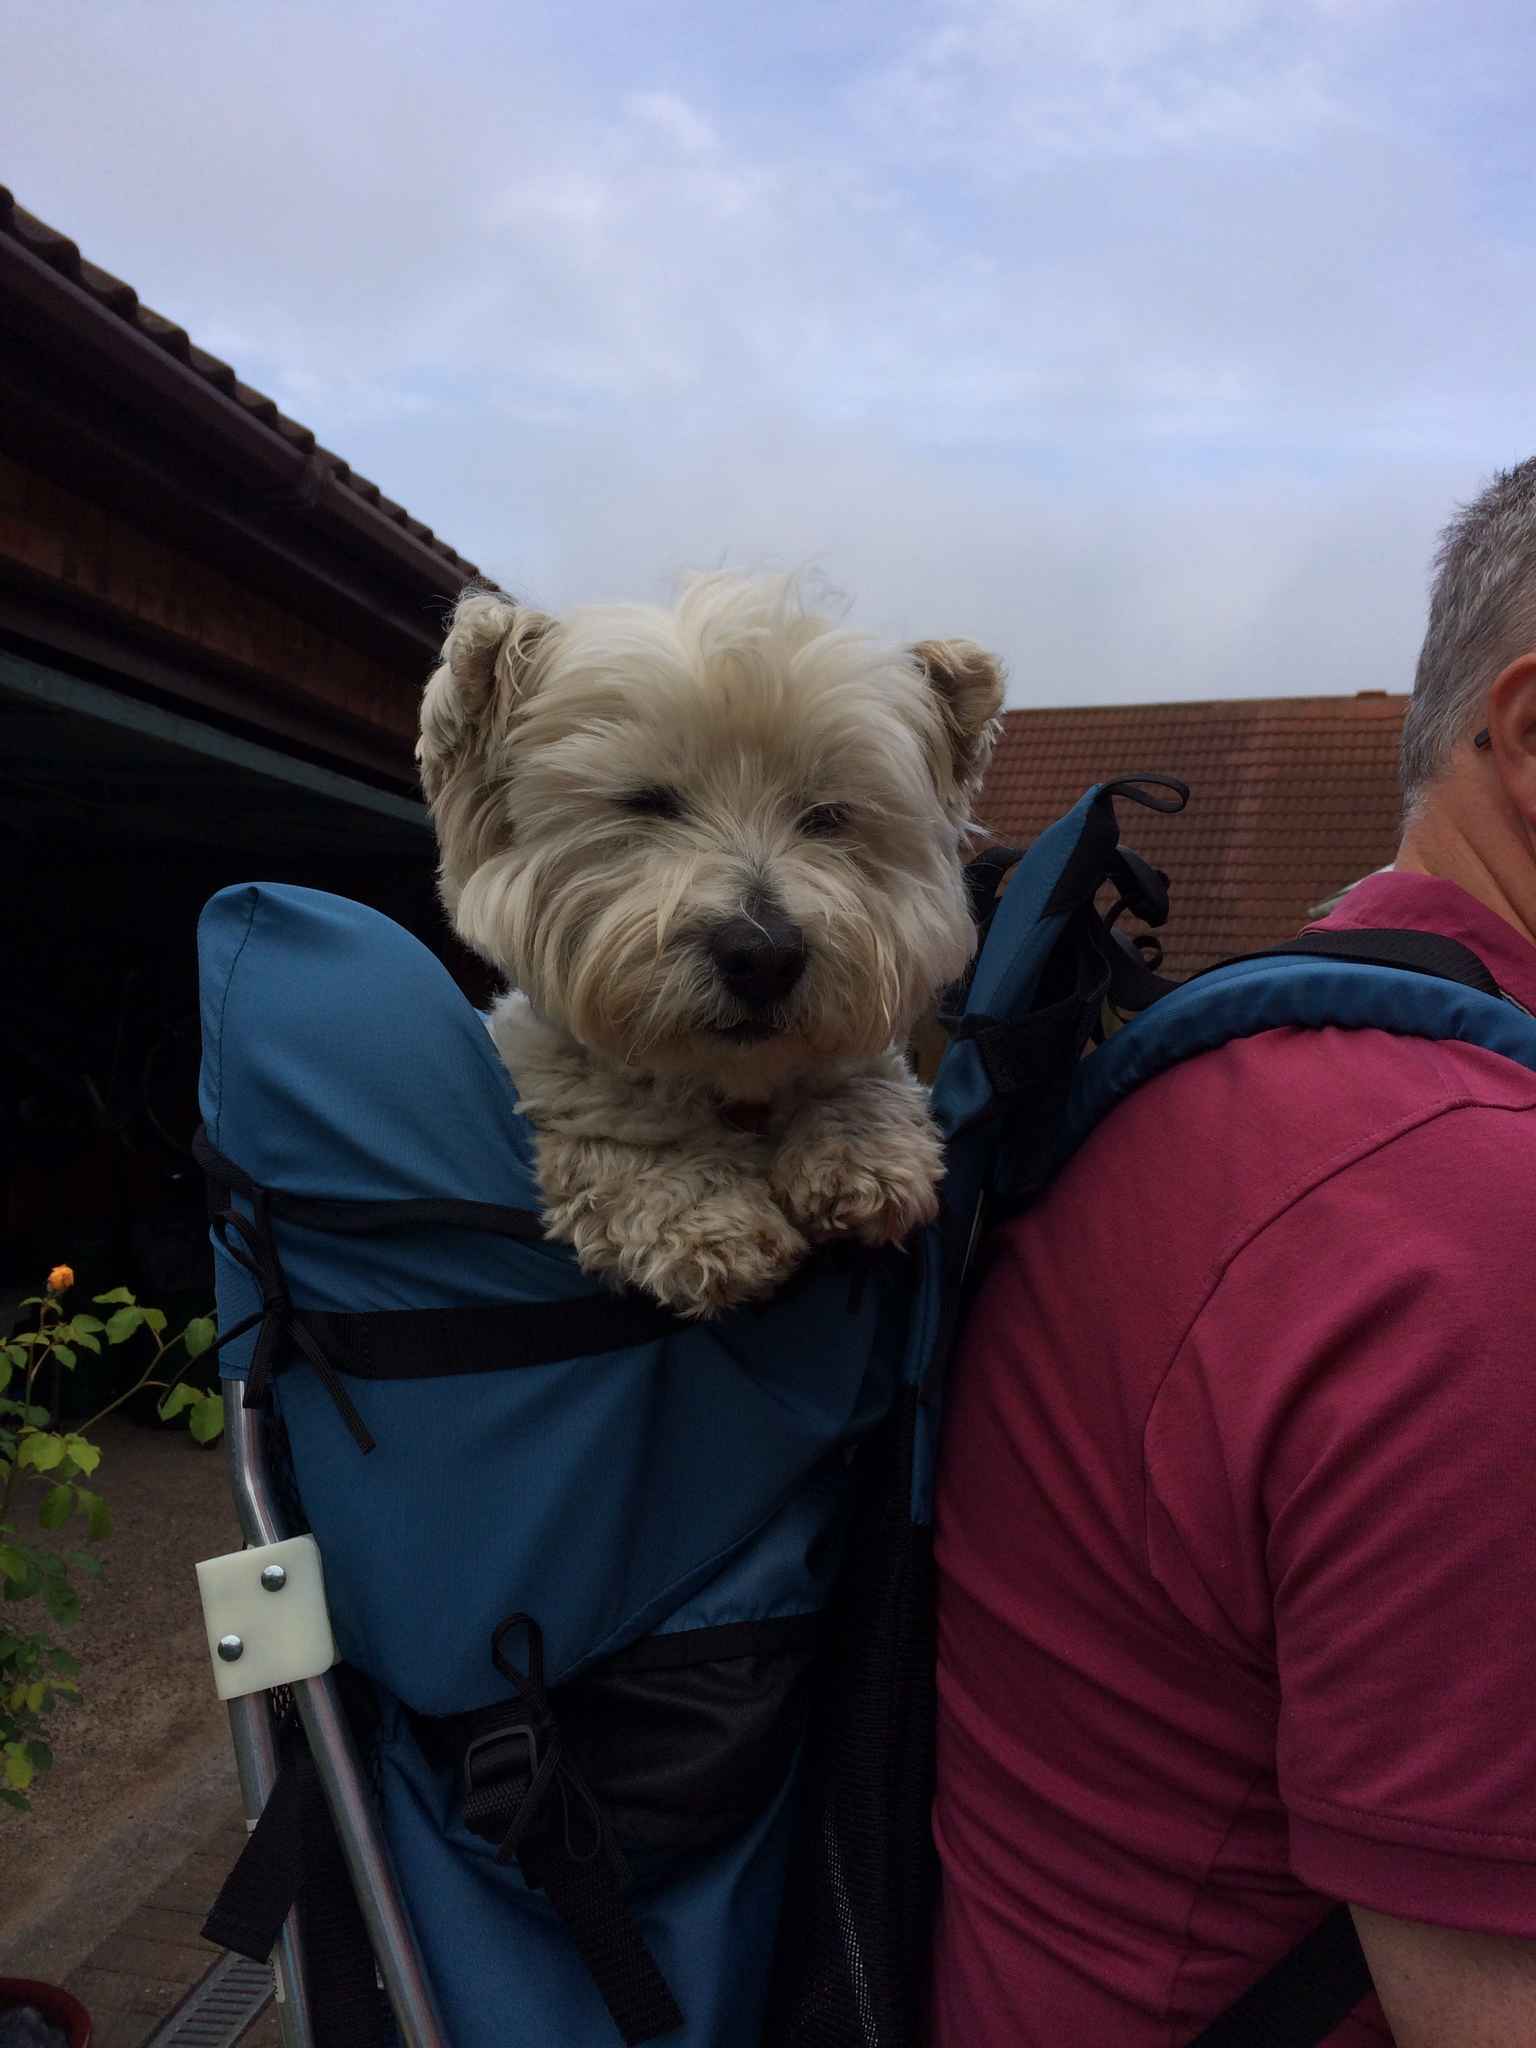 Dog Bag Crossbody Sling Messenger Dog Backpack for Puppy Large